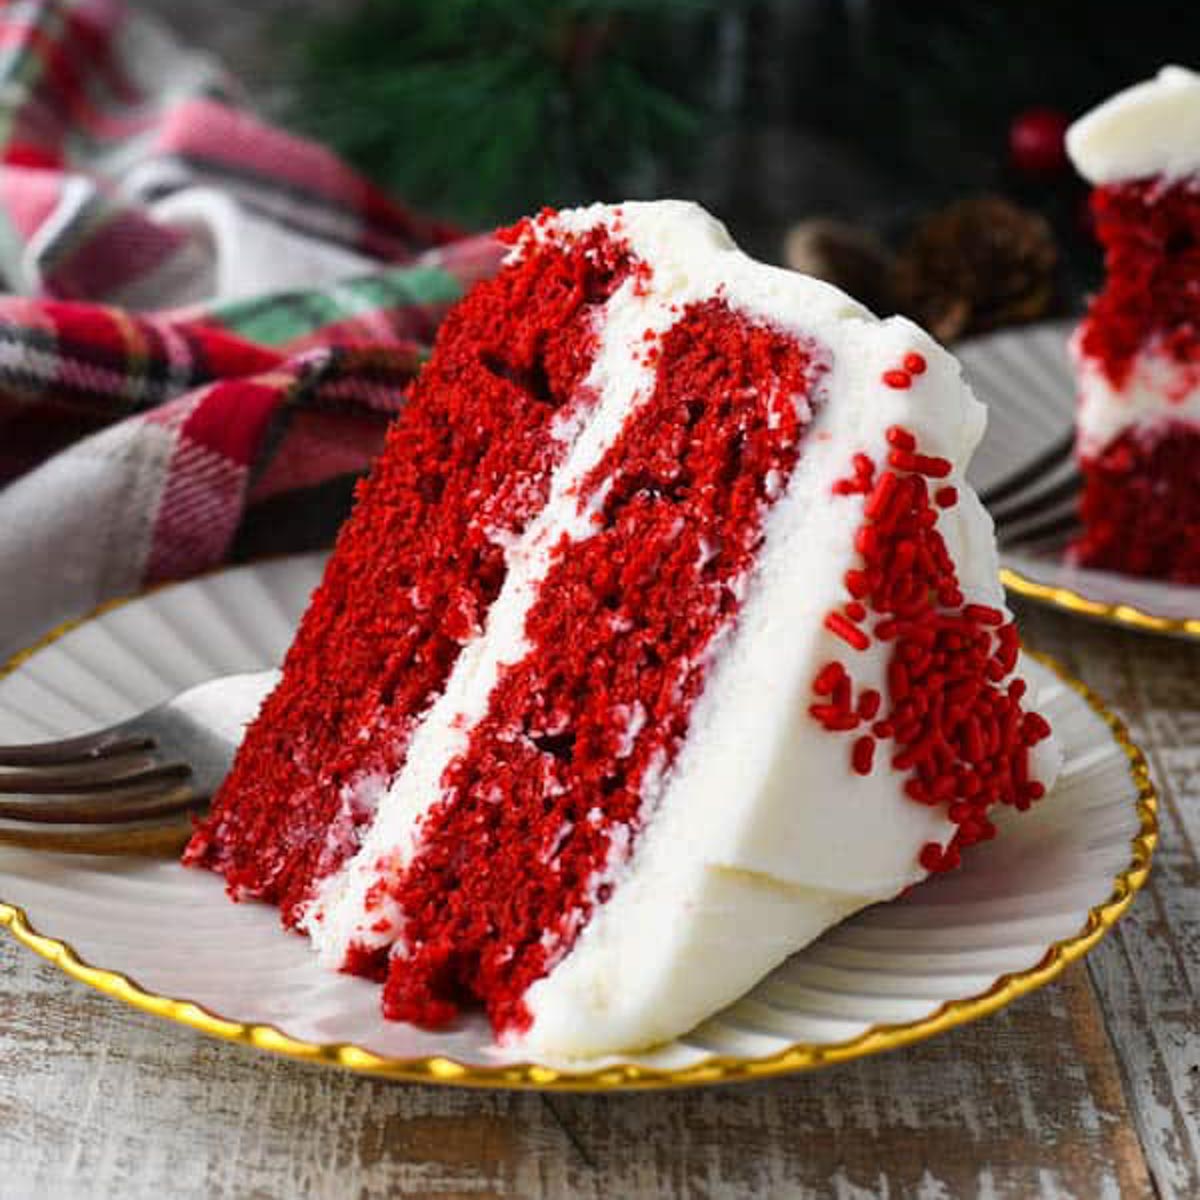 https://www.theseasonedmom.com/wp-content/uploads/2020/12/Red-Velvet-Cake-Square.jpg